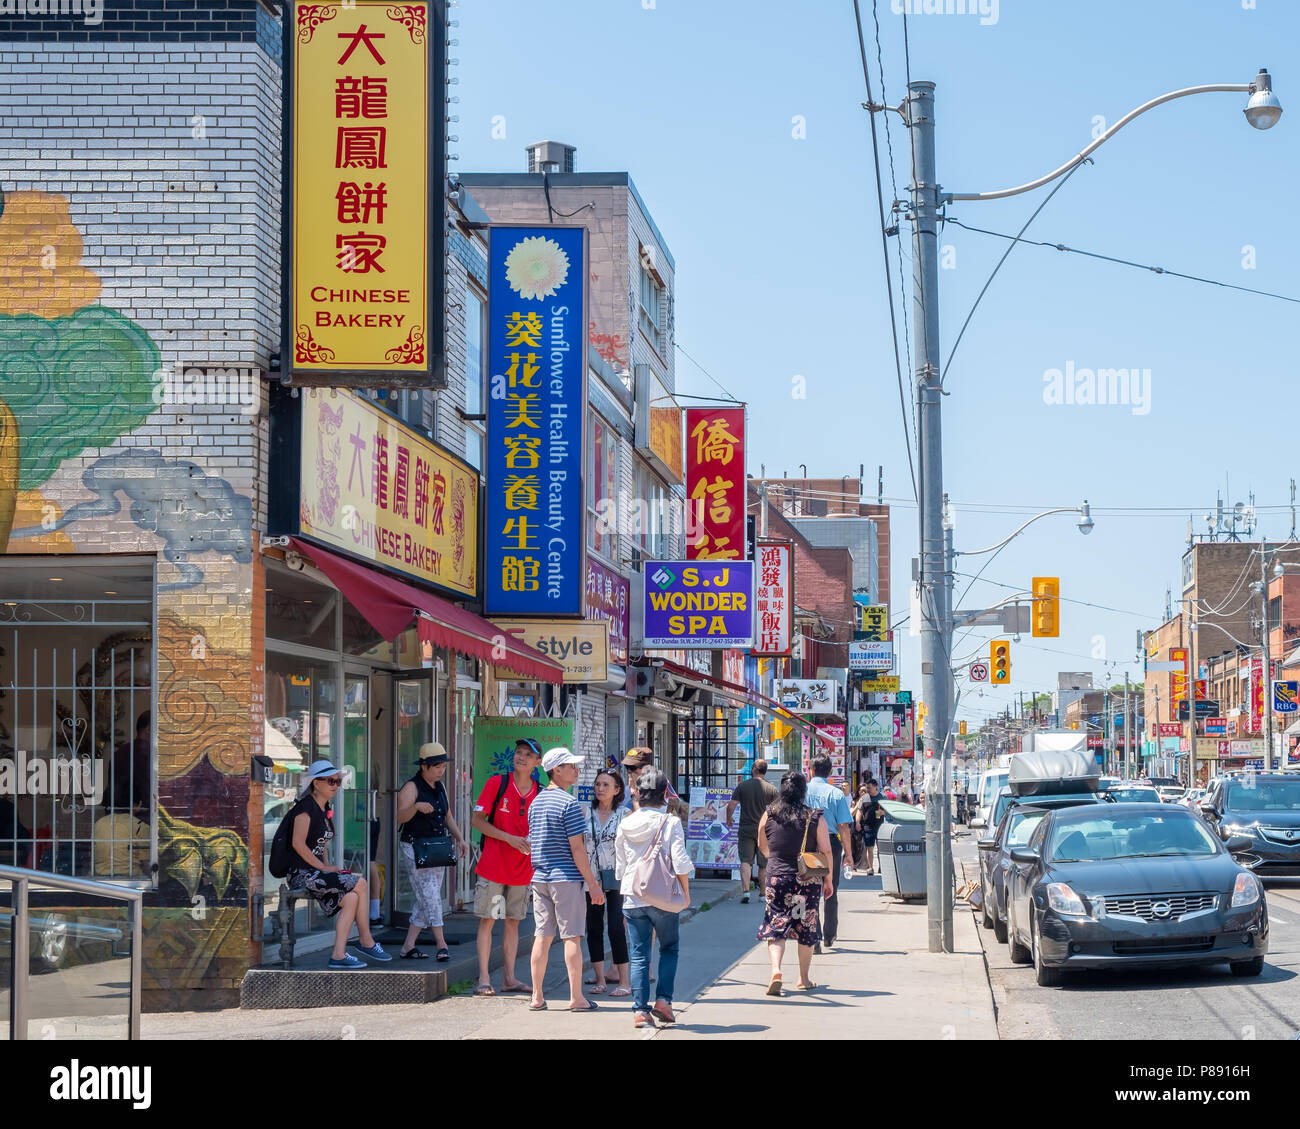 Toronto genießt eine große und lebendige chinesische Viertel Chinatown bekannt. Muss der Bezirk ist entlang der Dundas Street West in der Innenstadt gefunden. Stockfoto